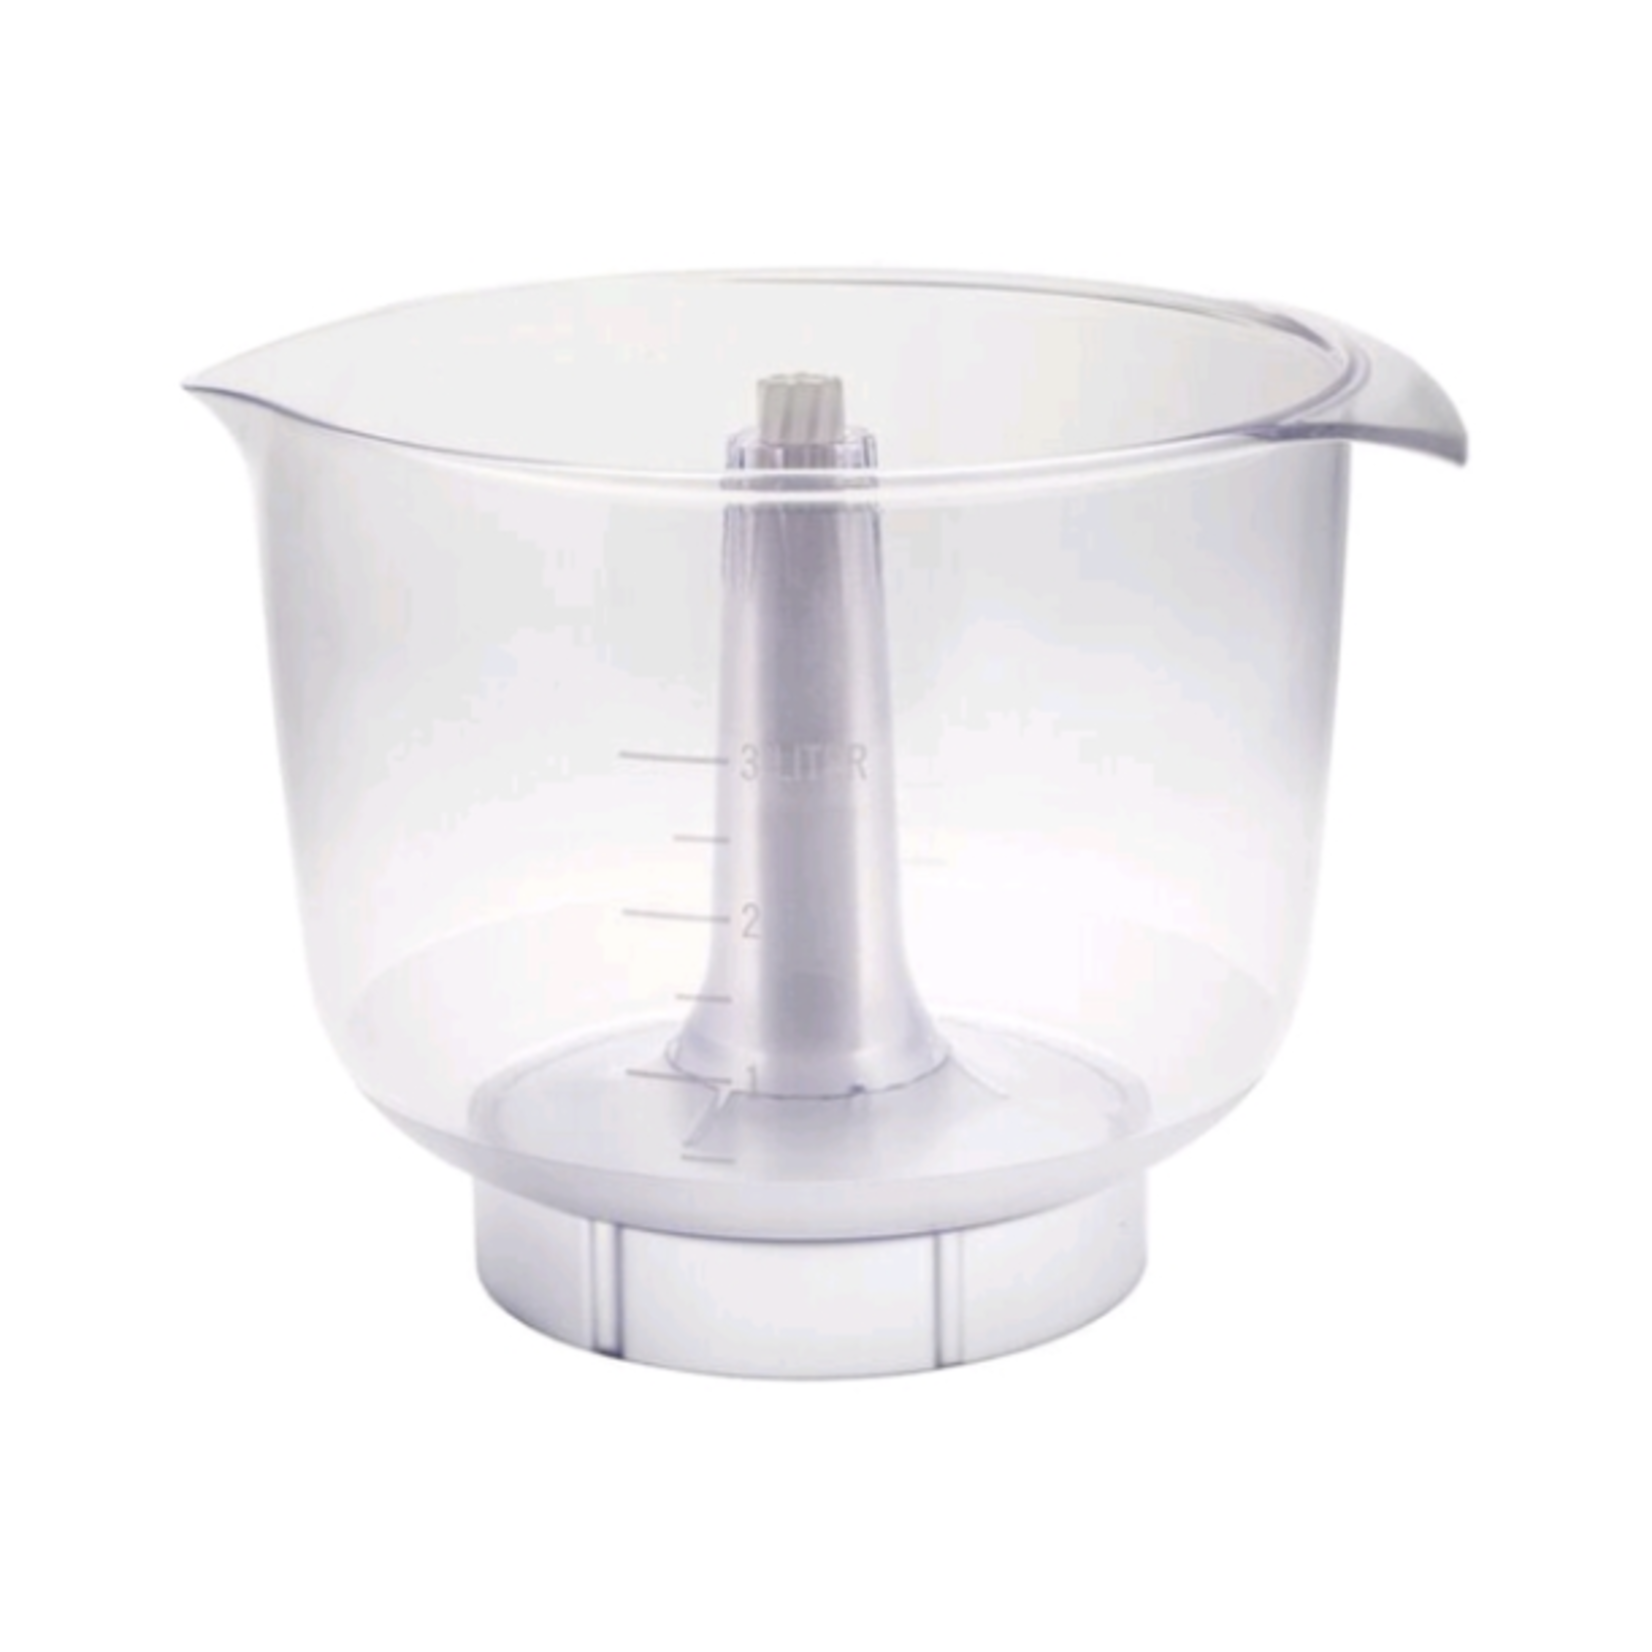 ANKARSRUM ANKARSRUM Clear Plastic Bowl 3.5L